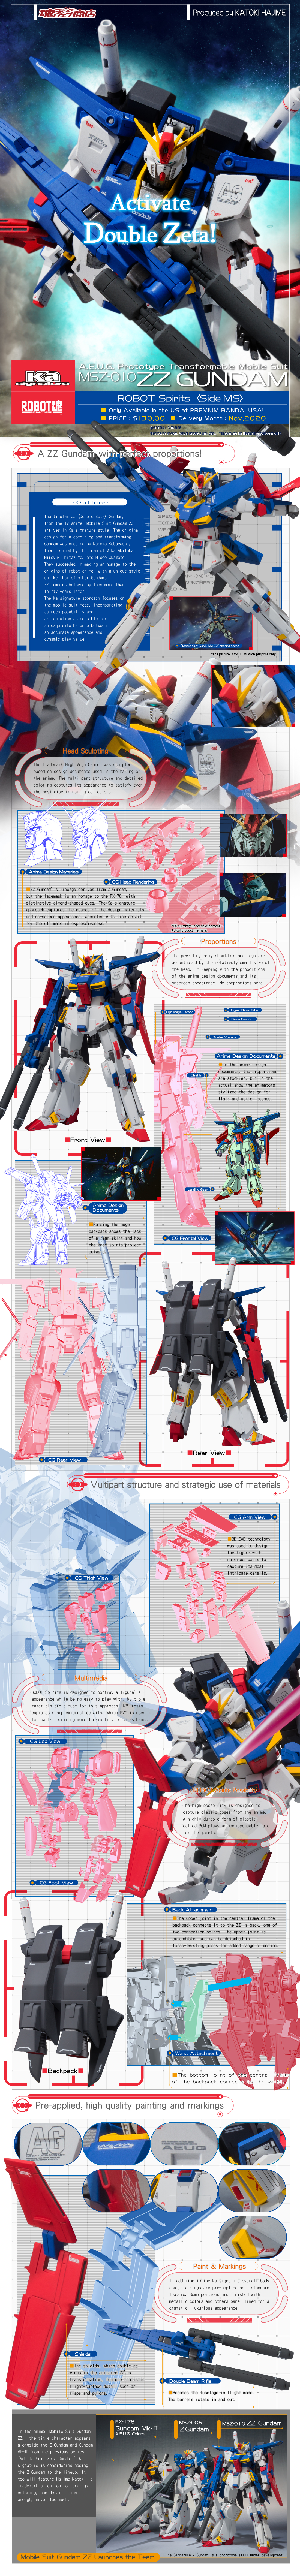 Ka signature Details about   ROBOT soul <SIDE MS> Dije 'Mobile Suit Z Gundam' Tamashii Web 